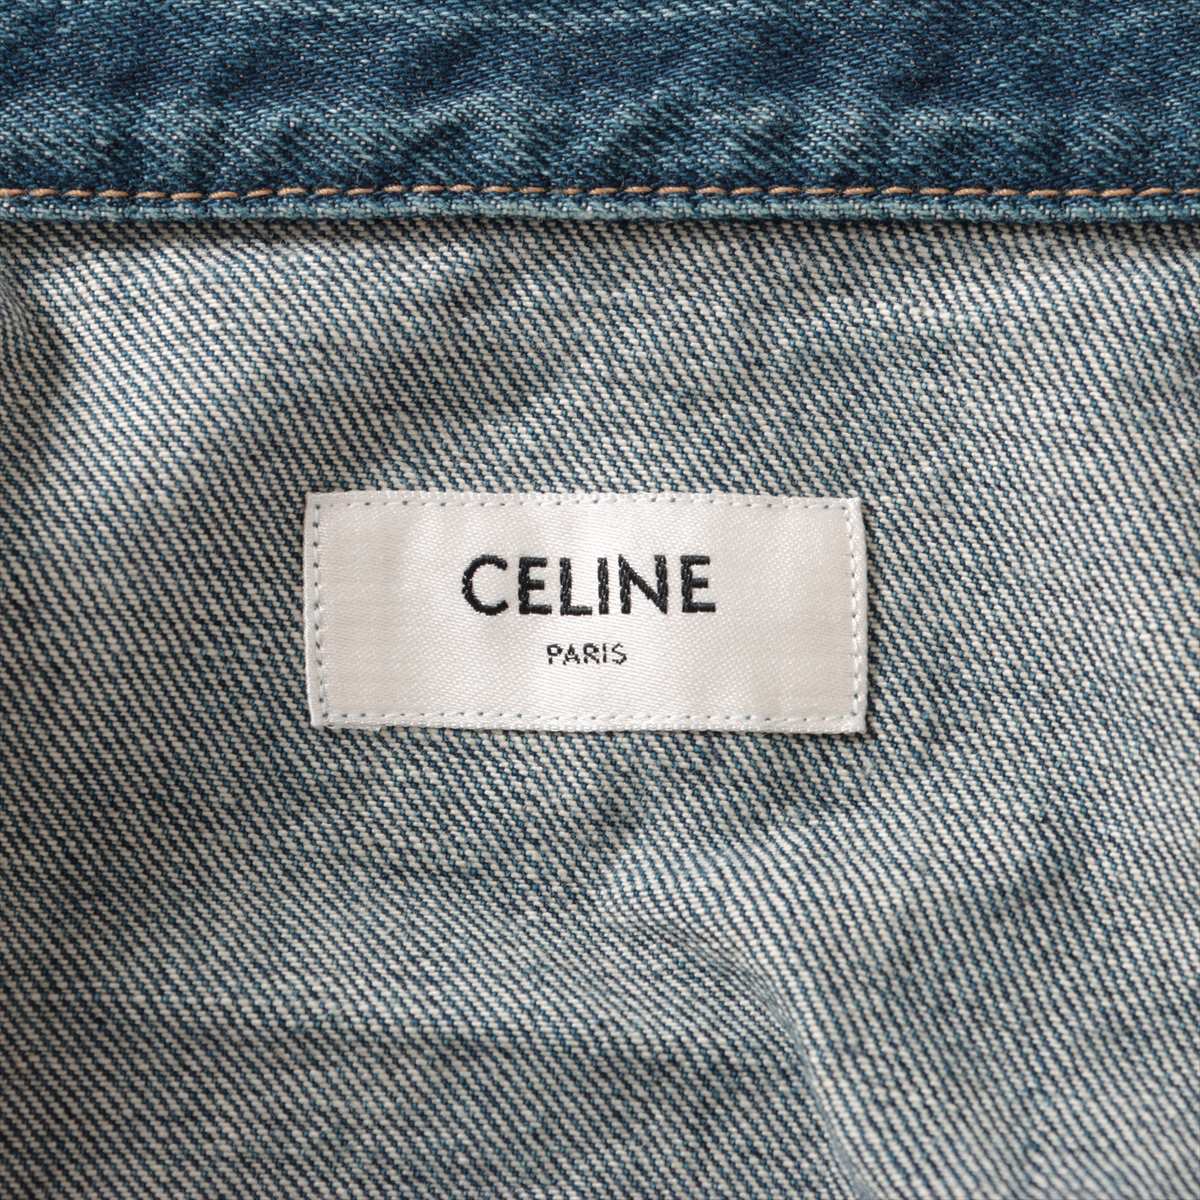 Celine Hedi Period Cotton Denim Jacket S Men's Blue  2Q544066S BOY DOLL Wash processing